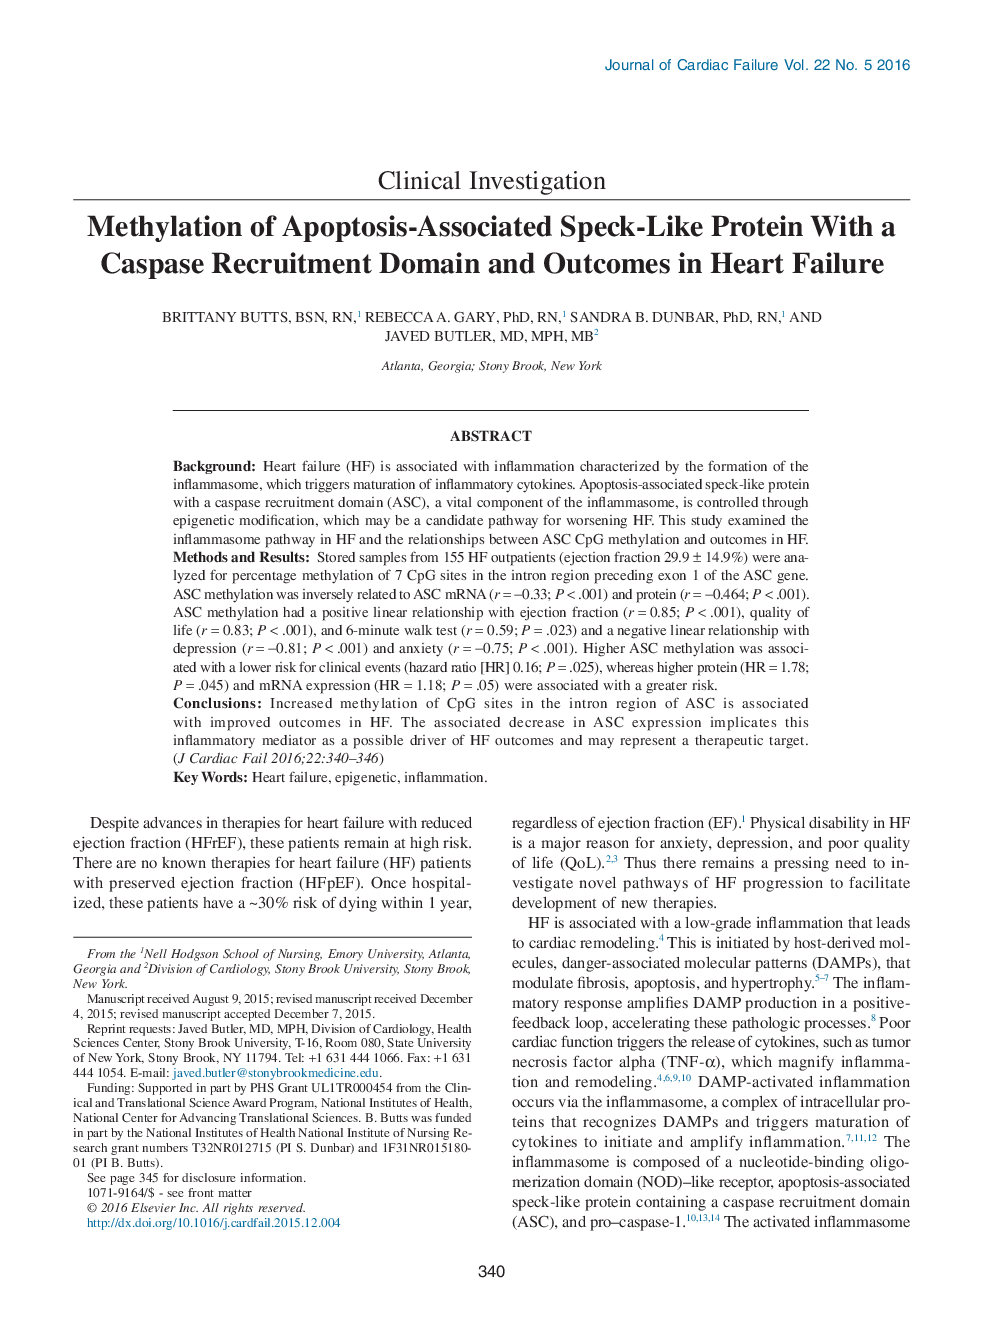 متیلاسیون پروتئین با خواص مشابه آپوپتوز با یک دامنه استخدام کاسپاز و نتایج در نارسایی قلب 